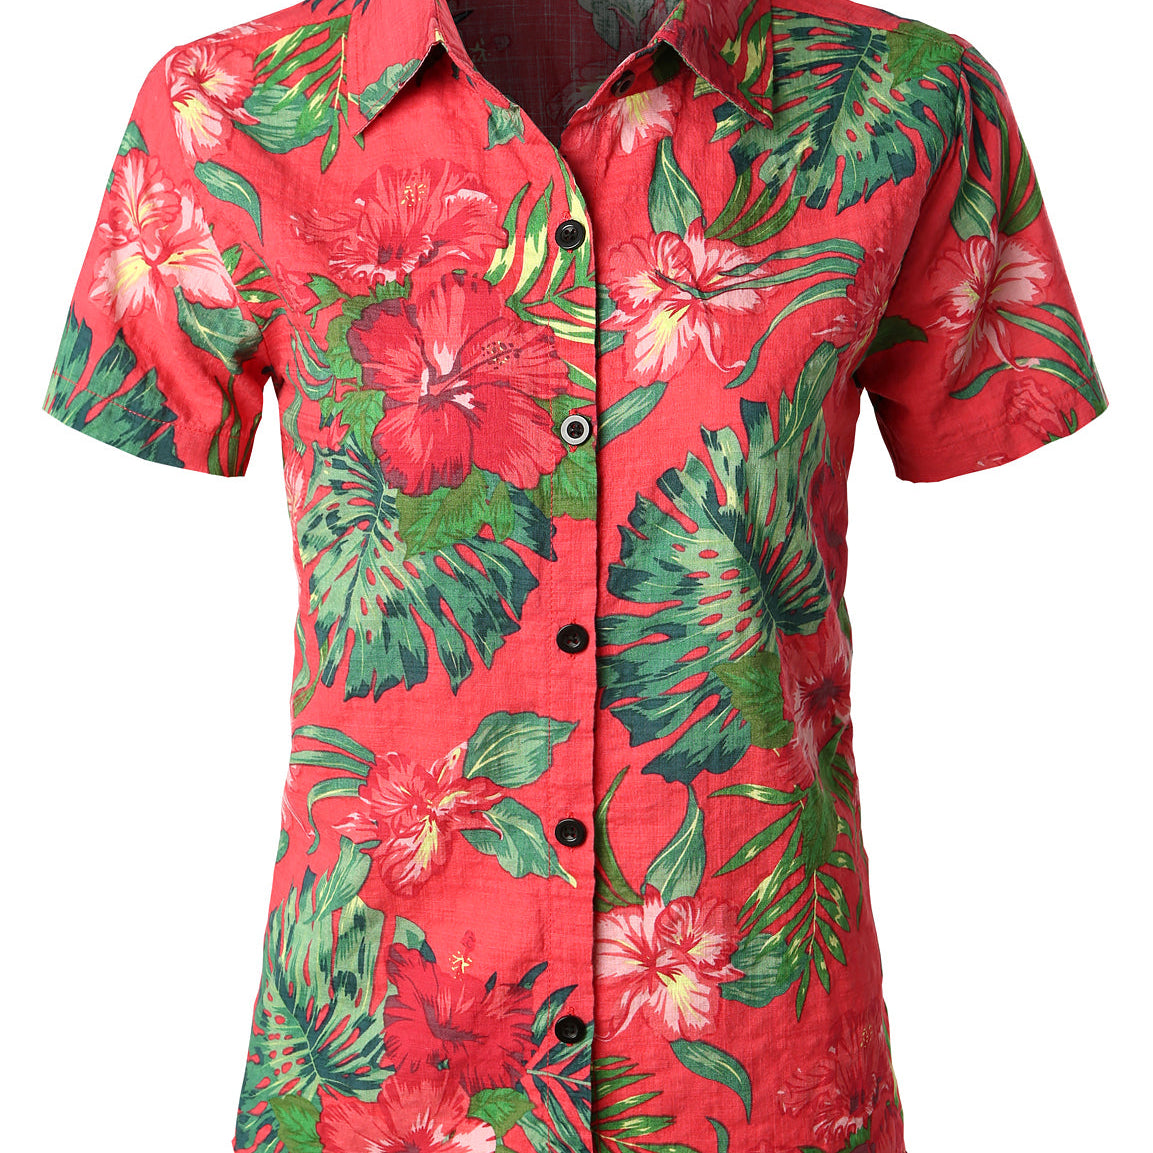 Chemisier respirant imprimé fleuri pour femme coton Aloha chemise hawaïenne rouge à manches courtes